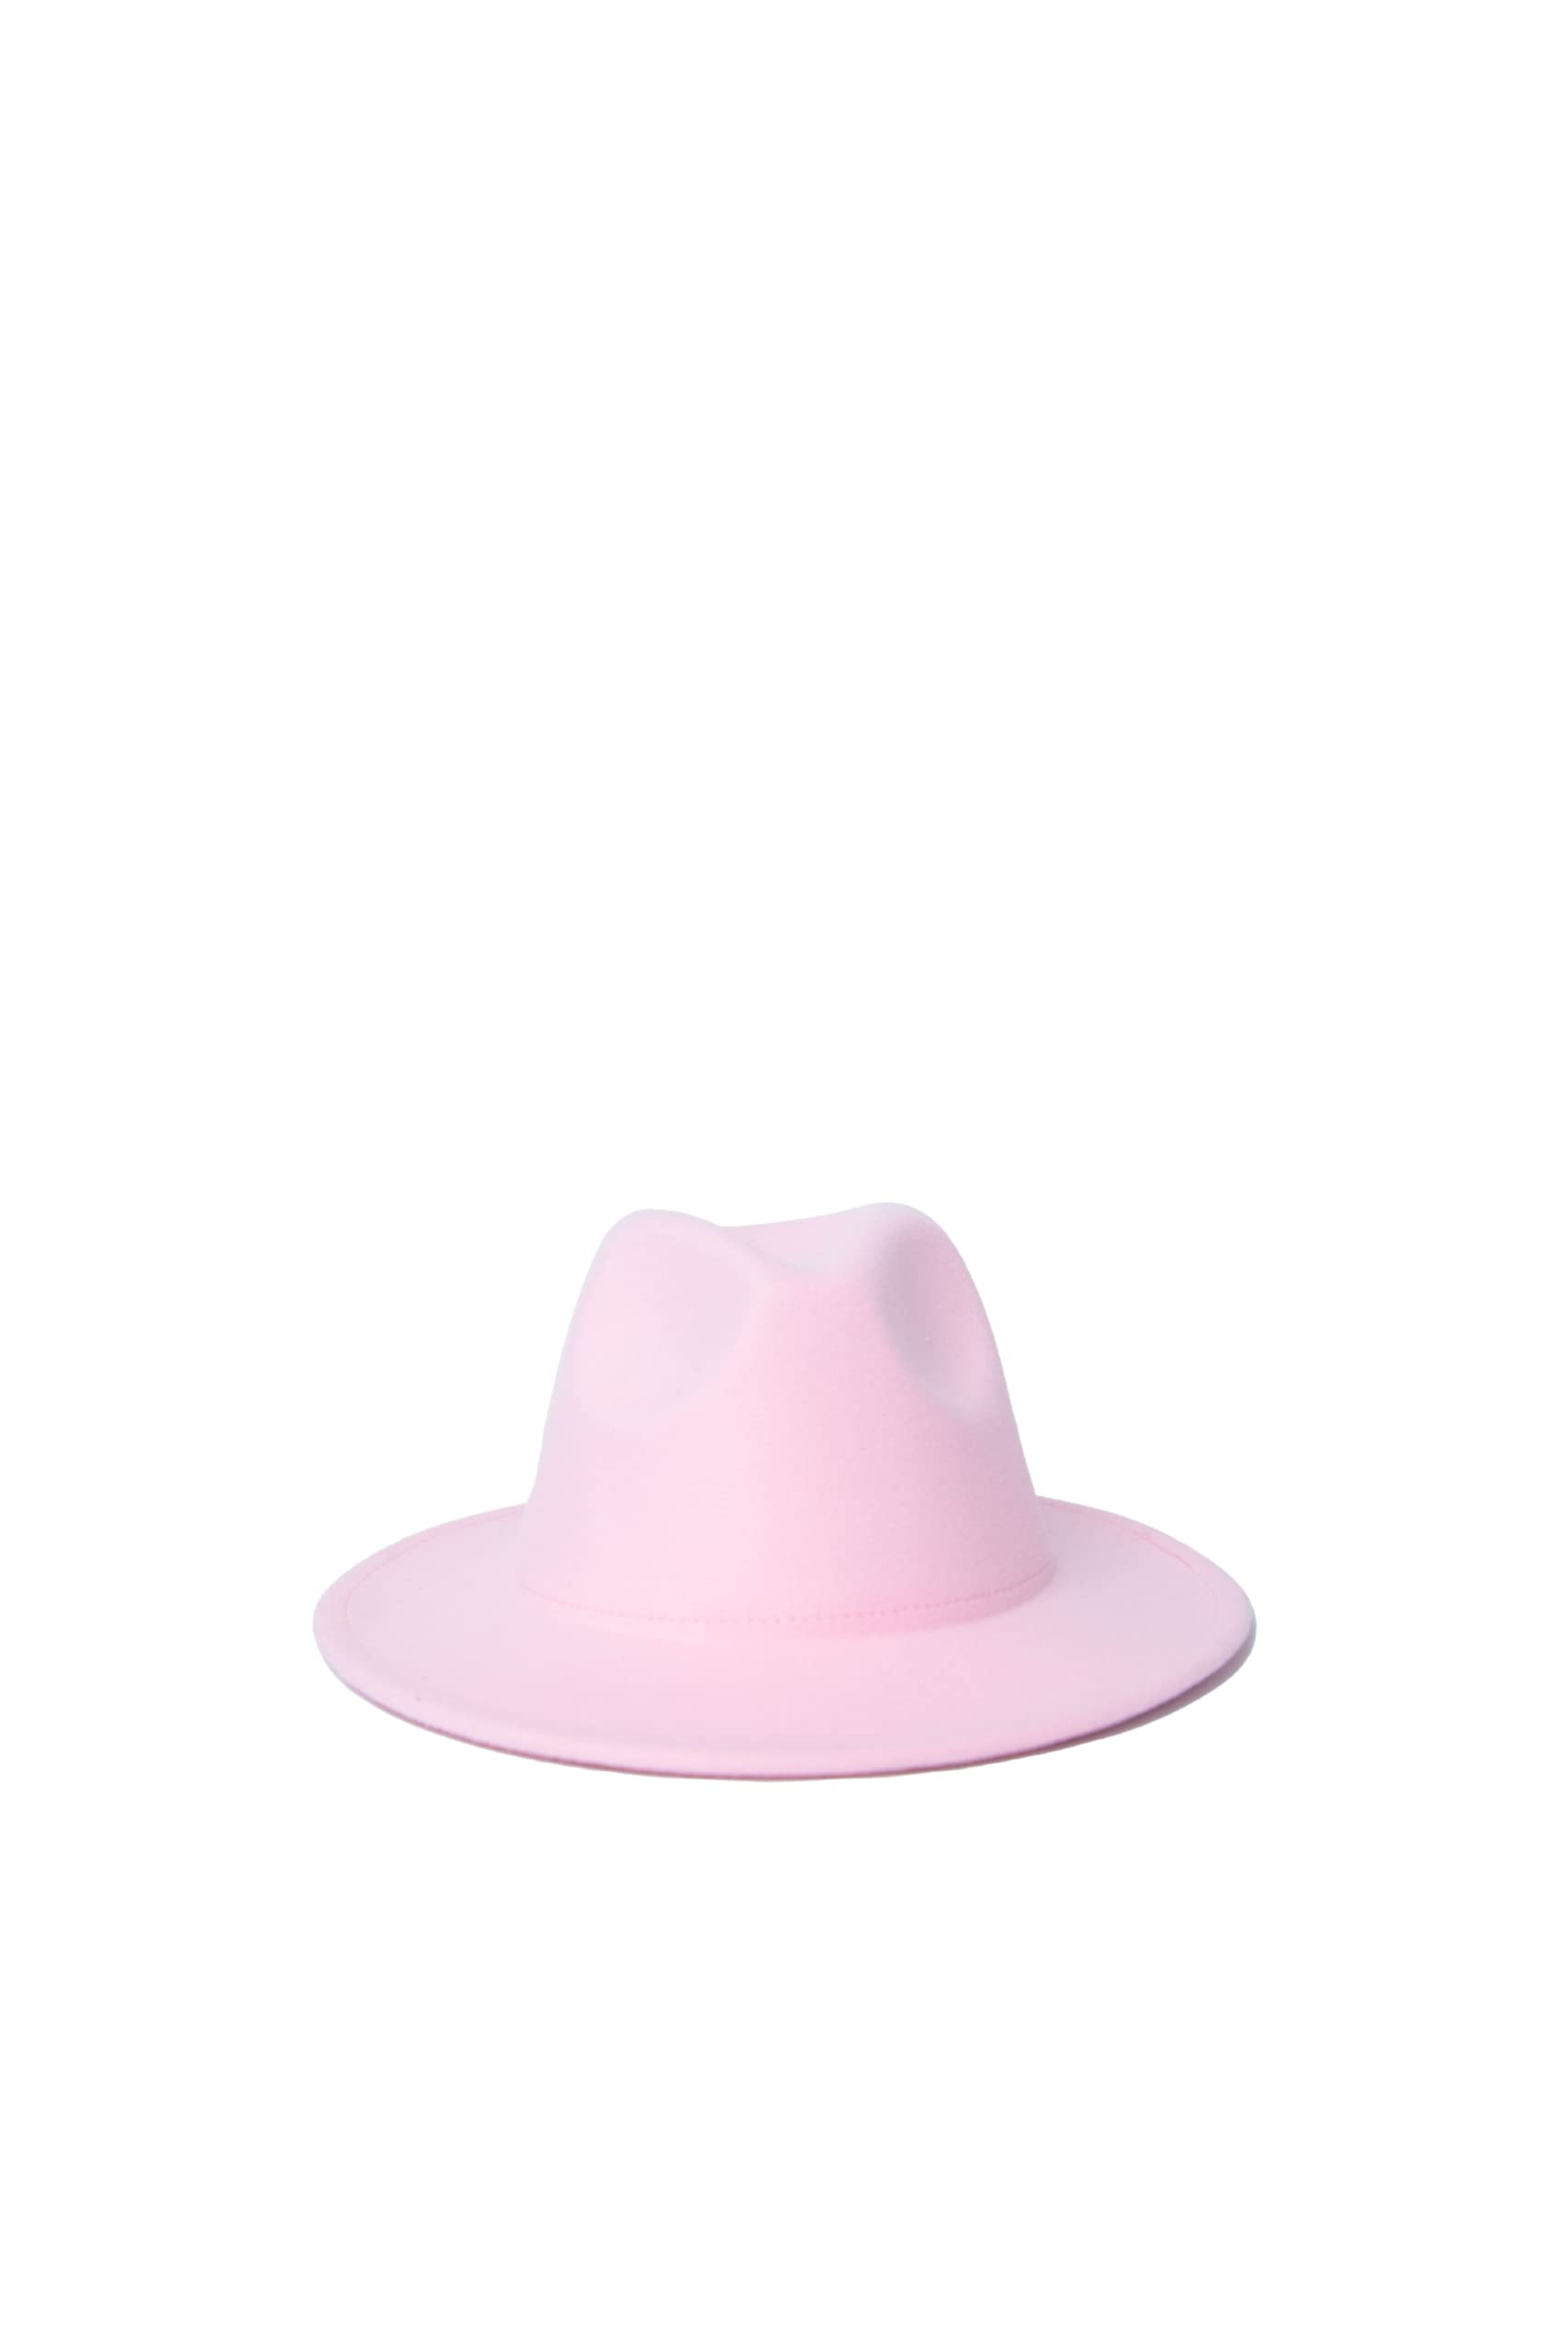 送料無料Allie B. Wide Brim Pinched Crown Fedora Hats for Women Men with Adjustable Strap Pink並行輸入品